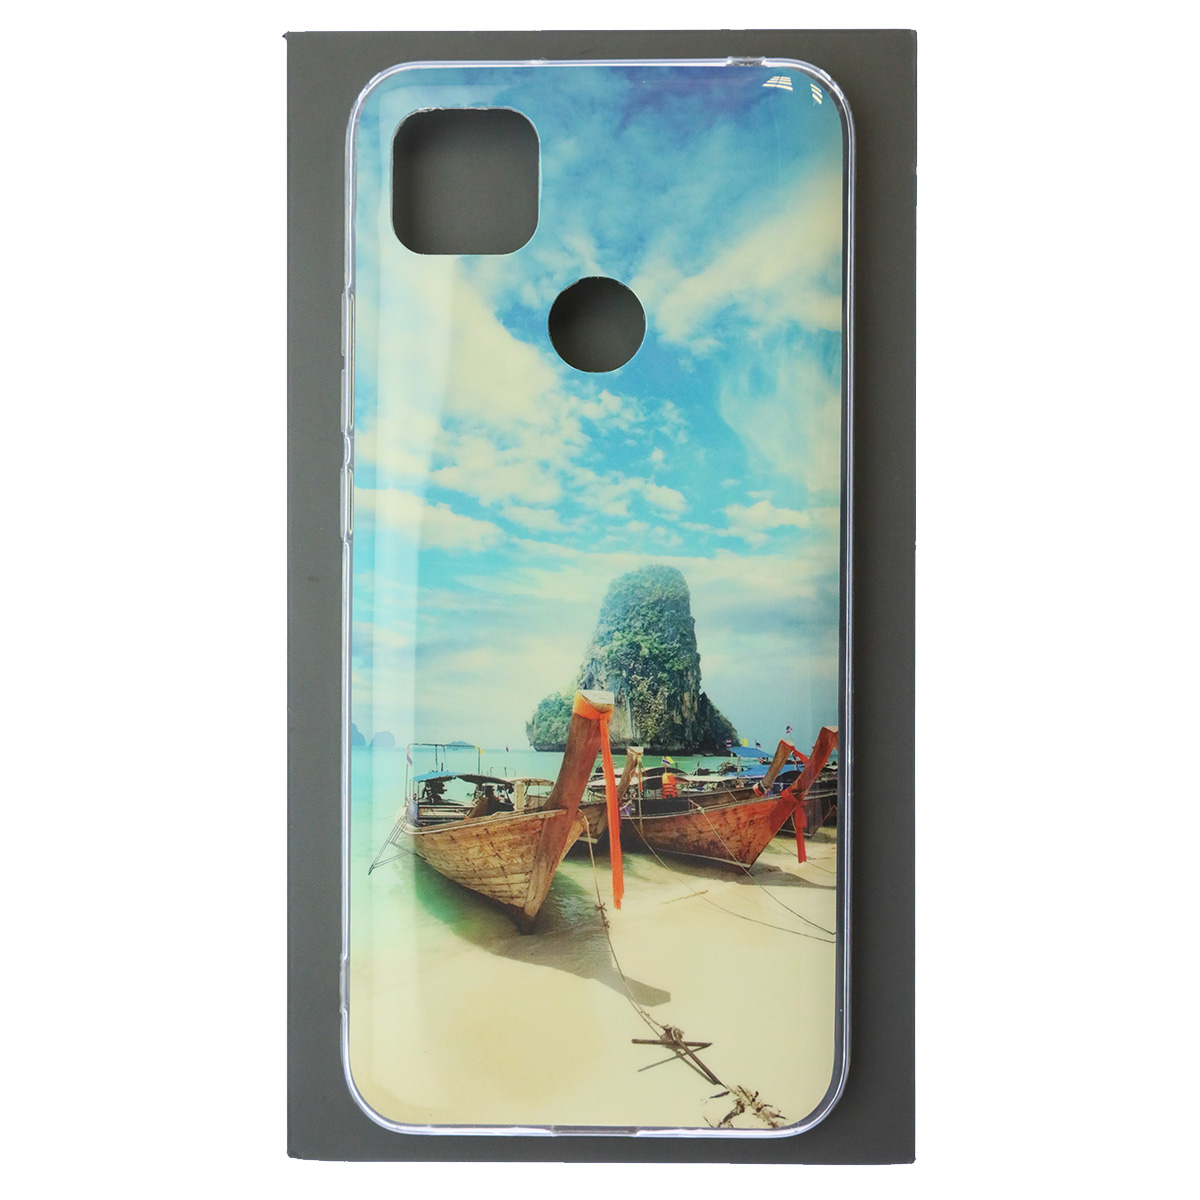 Чехол накладка для XIAOMI Redmi 9C, Redmi 10A, силикон, глянцевый, рисунок Пляж